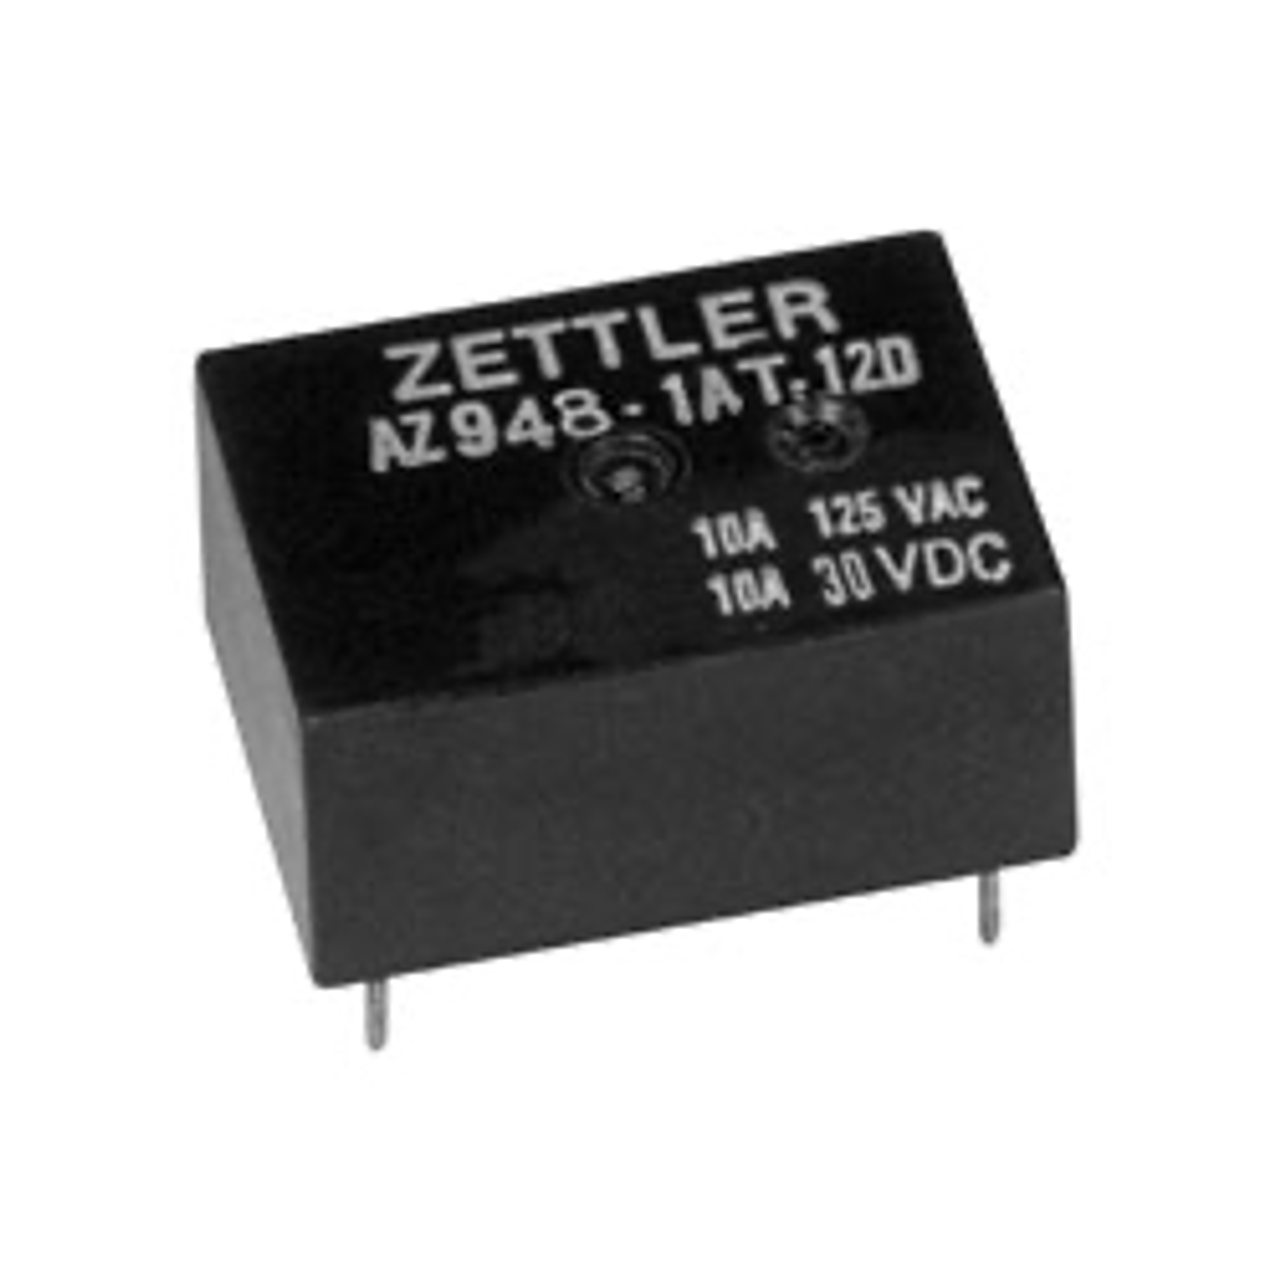 American Zettler AZ948-1AET-12DE Power Relay